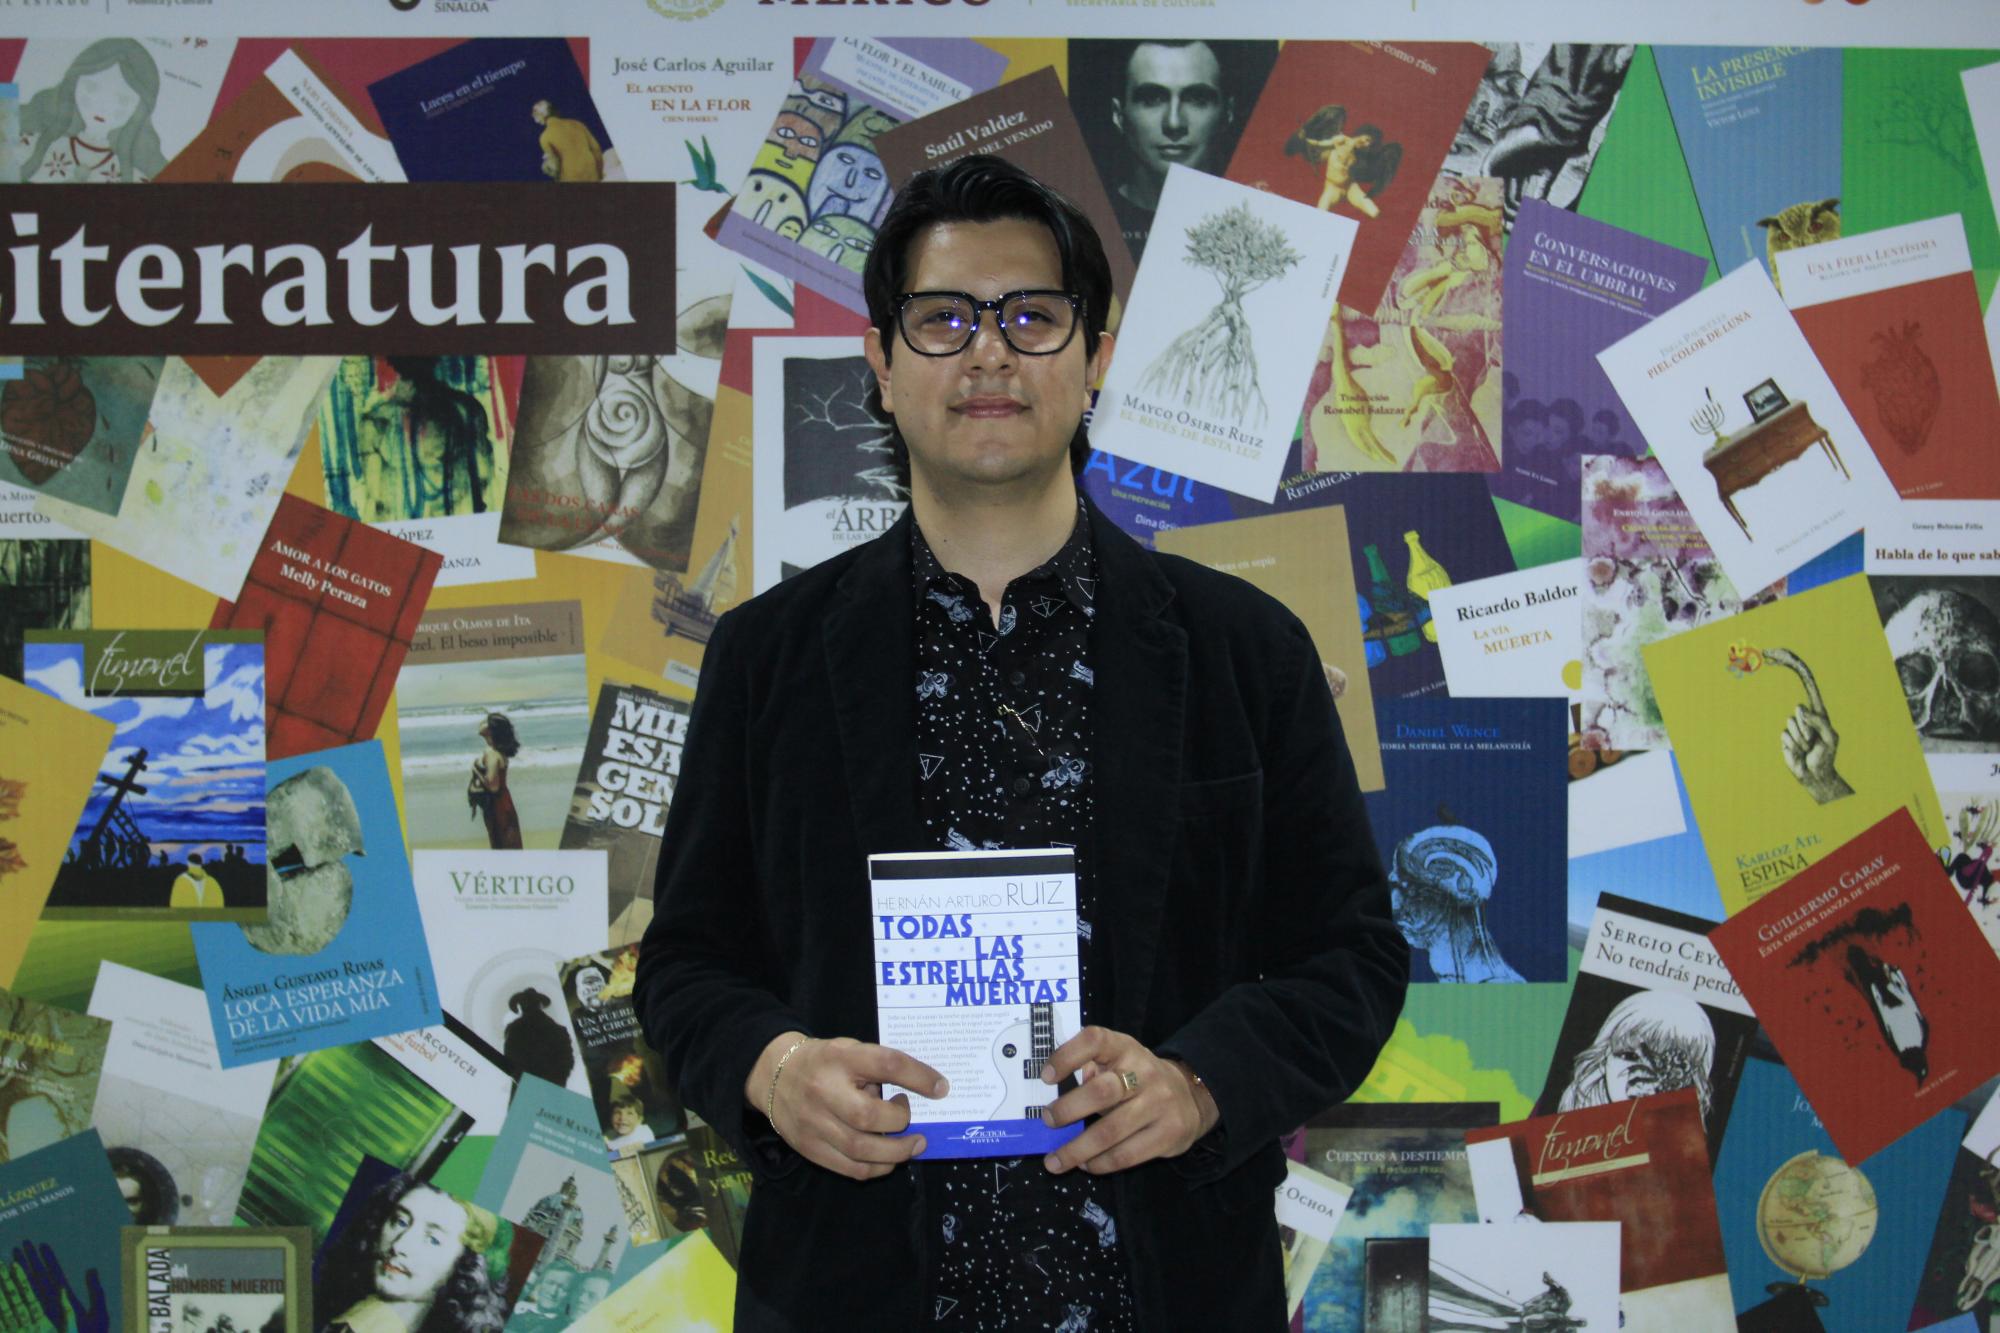 $!Todas las estrellas muertas es la primer novela escrita por Hernán Arturo Ruiz.